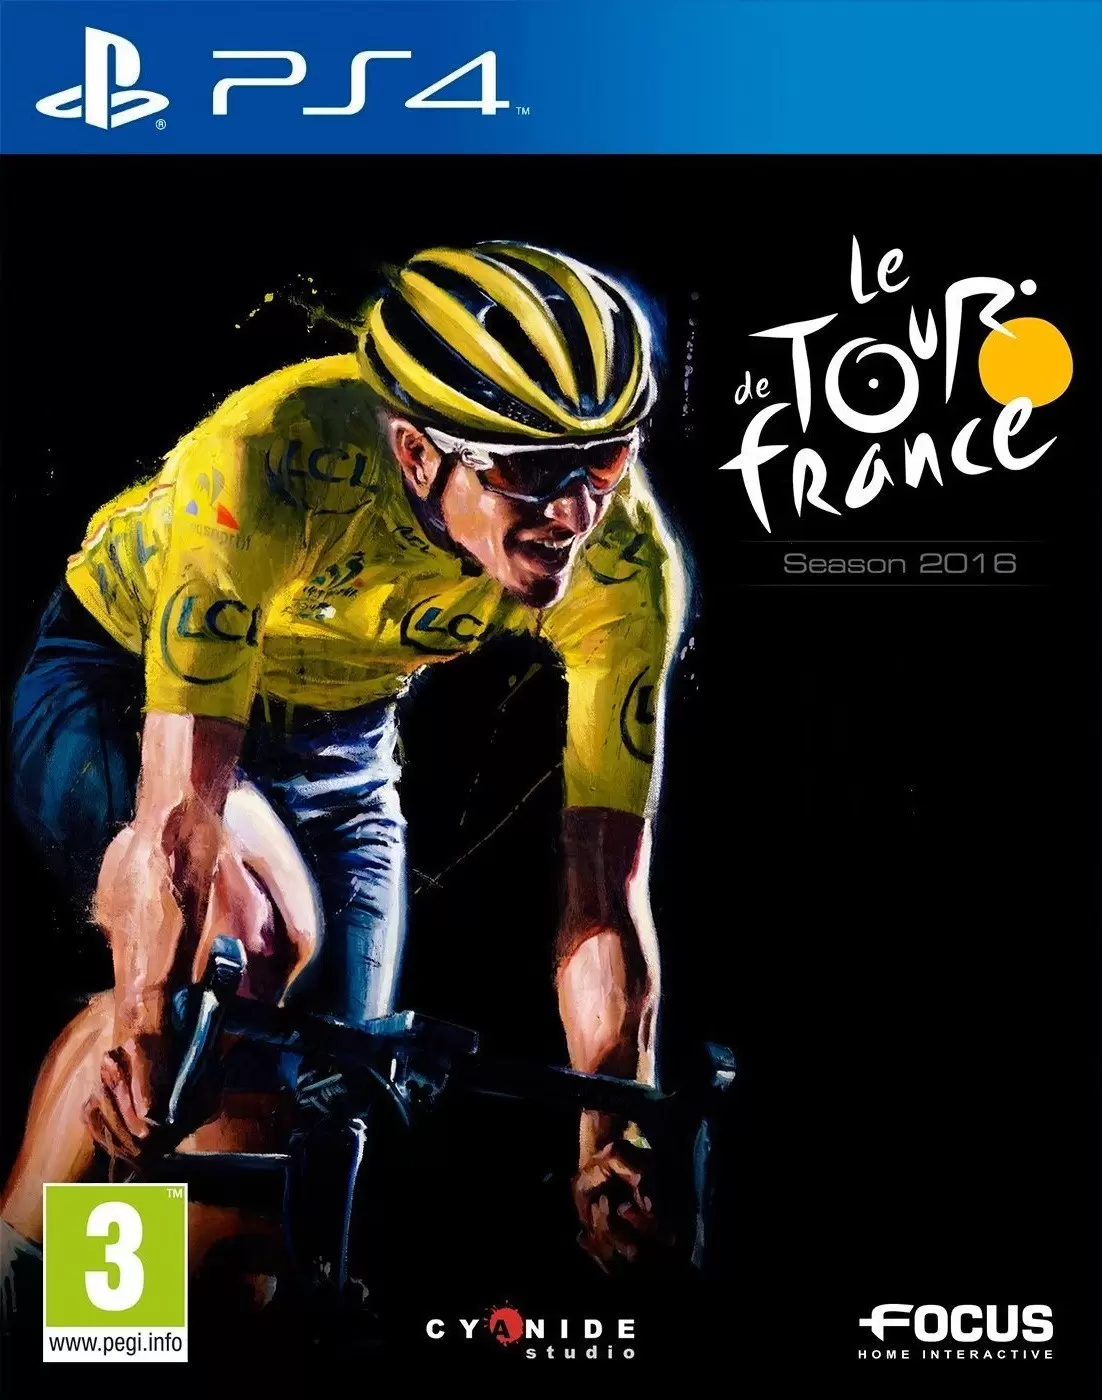 PS4 Games - Tour de France 2016